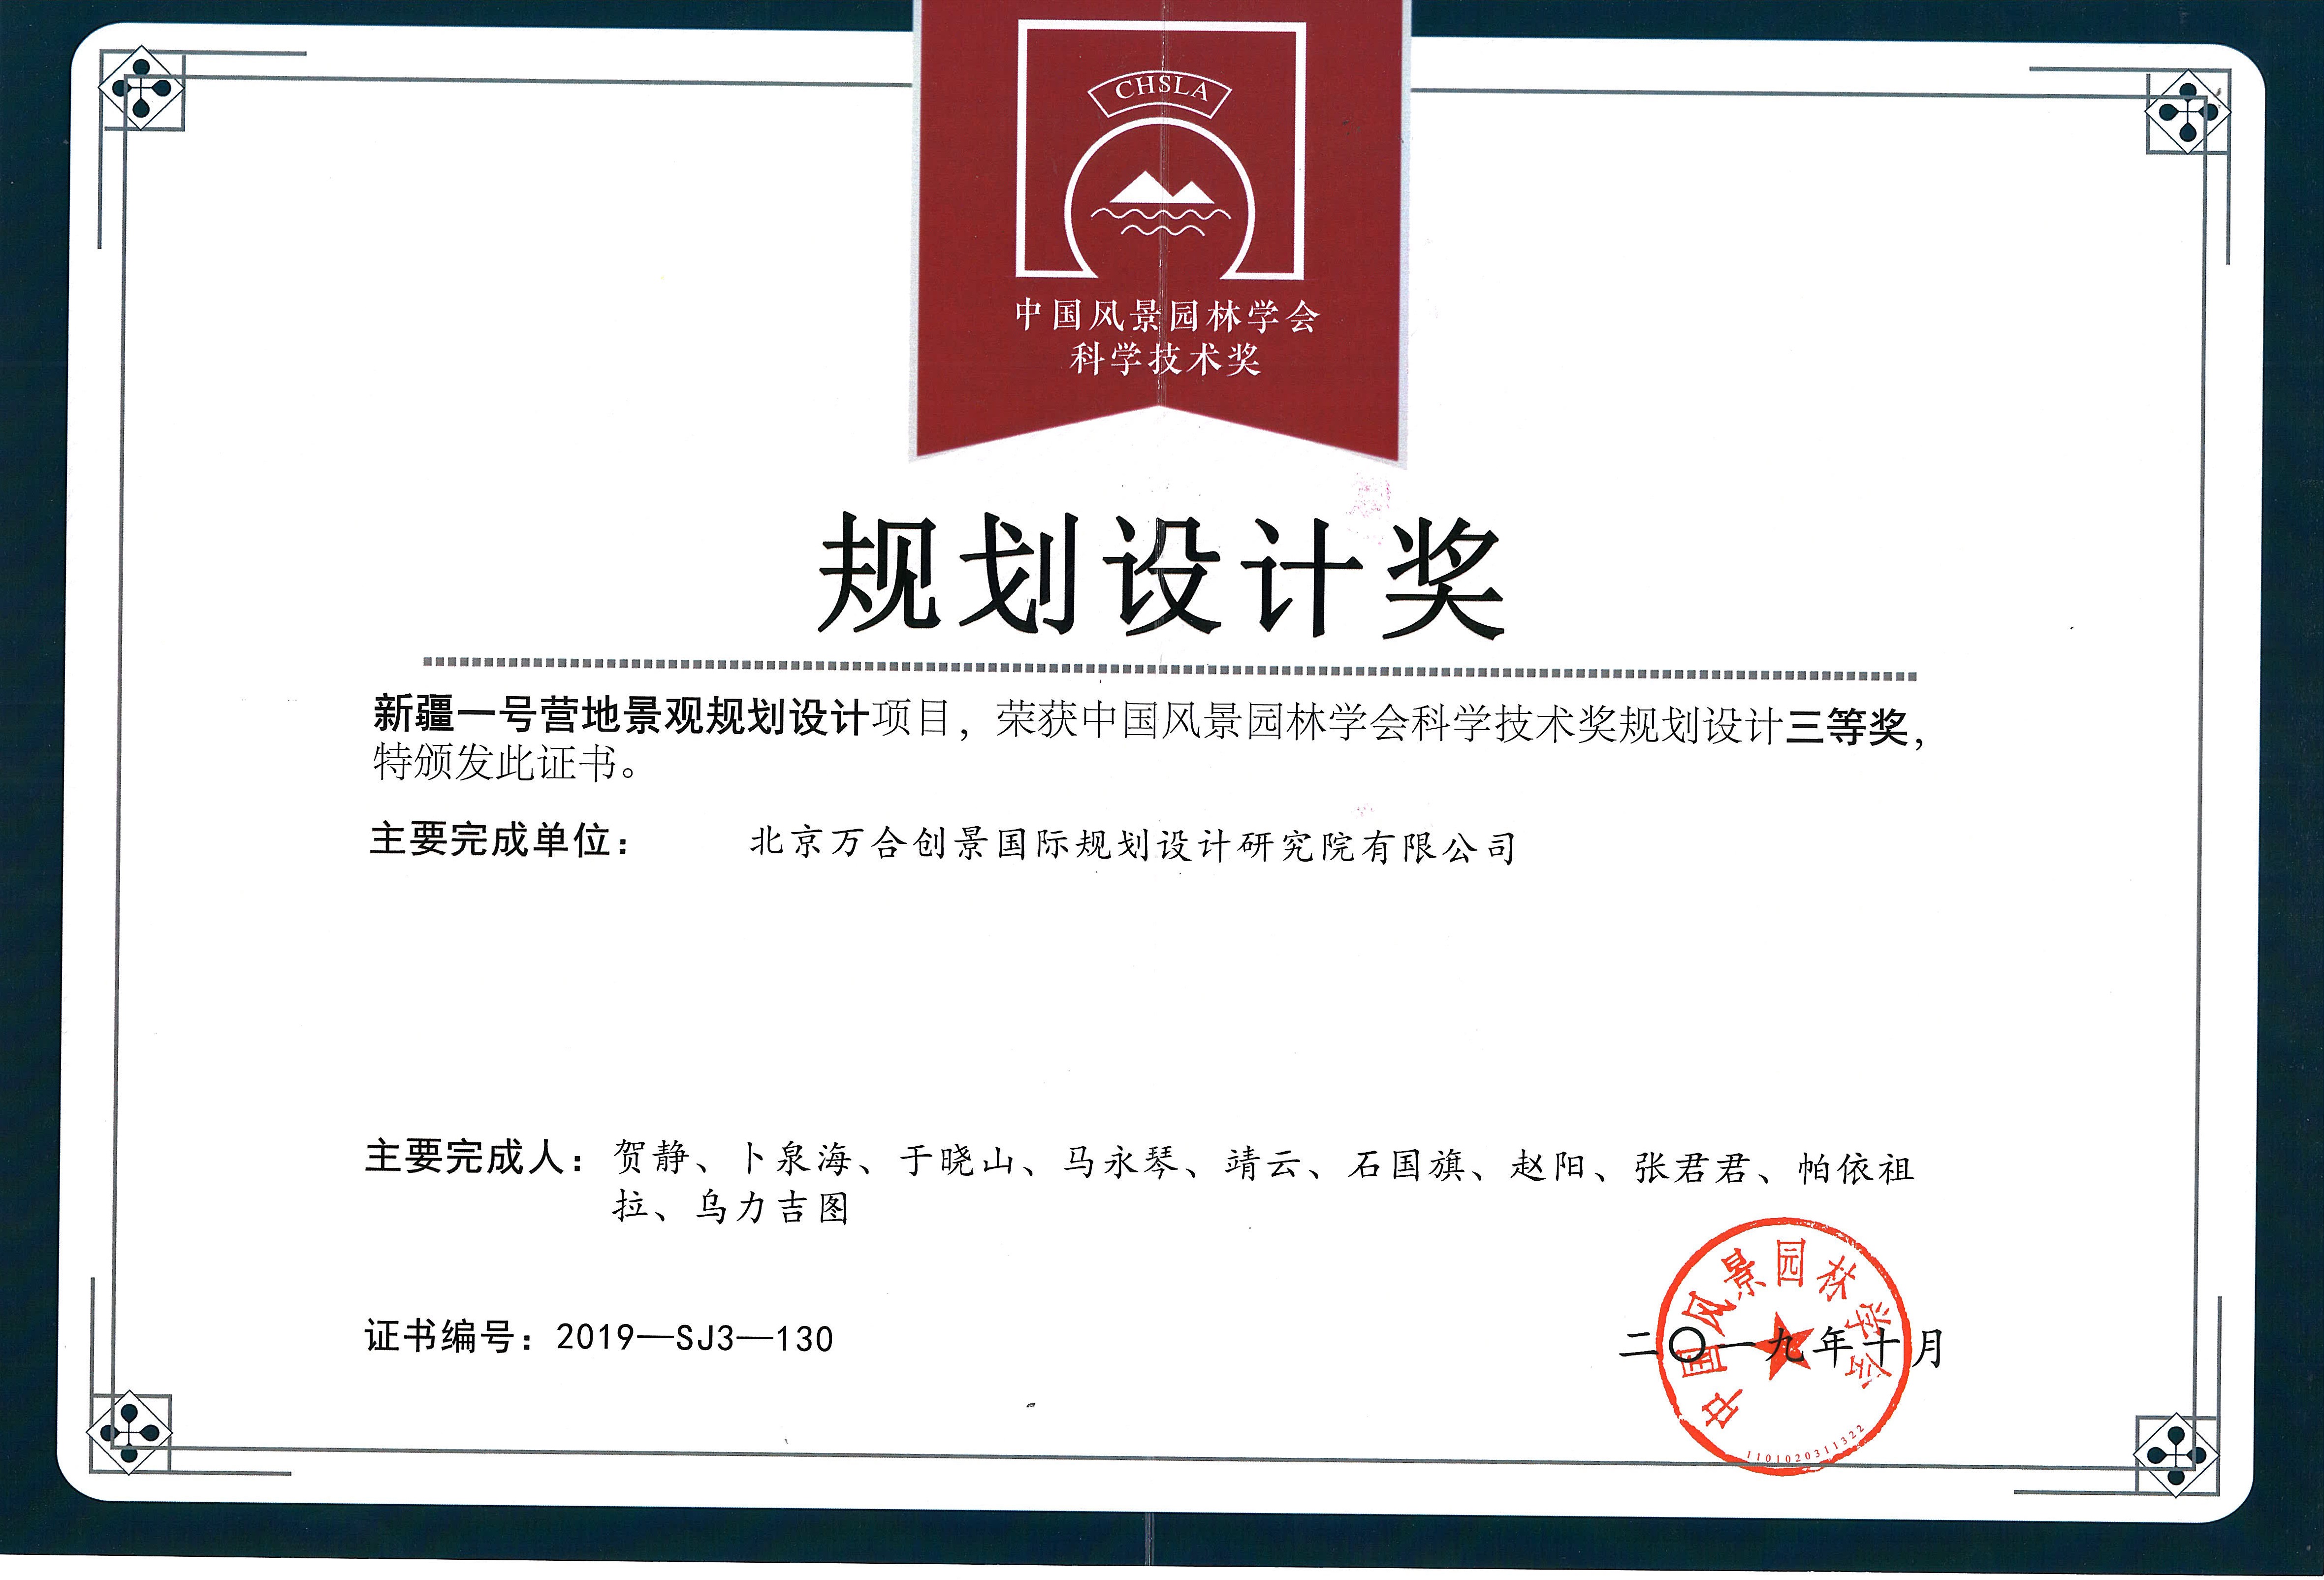 中国风景园林学会科学技术奖规划设计三等奖